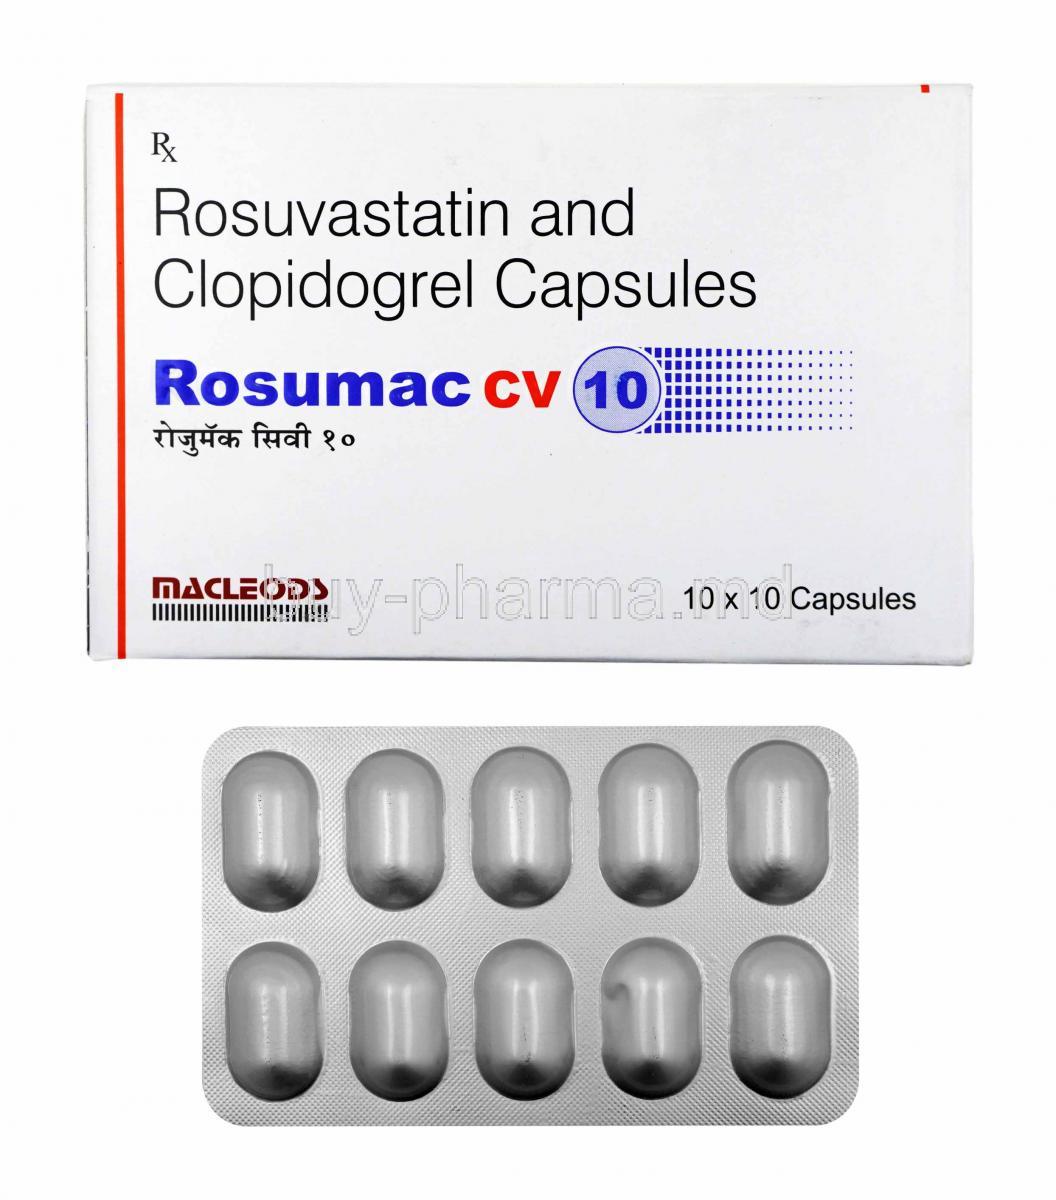 Rosumac CV, Rosuvastatin and Clopidogrel 10mg box and capsules